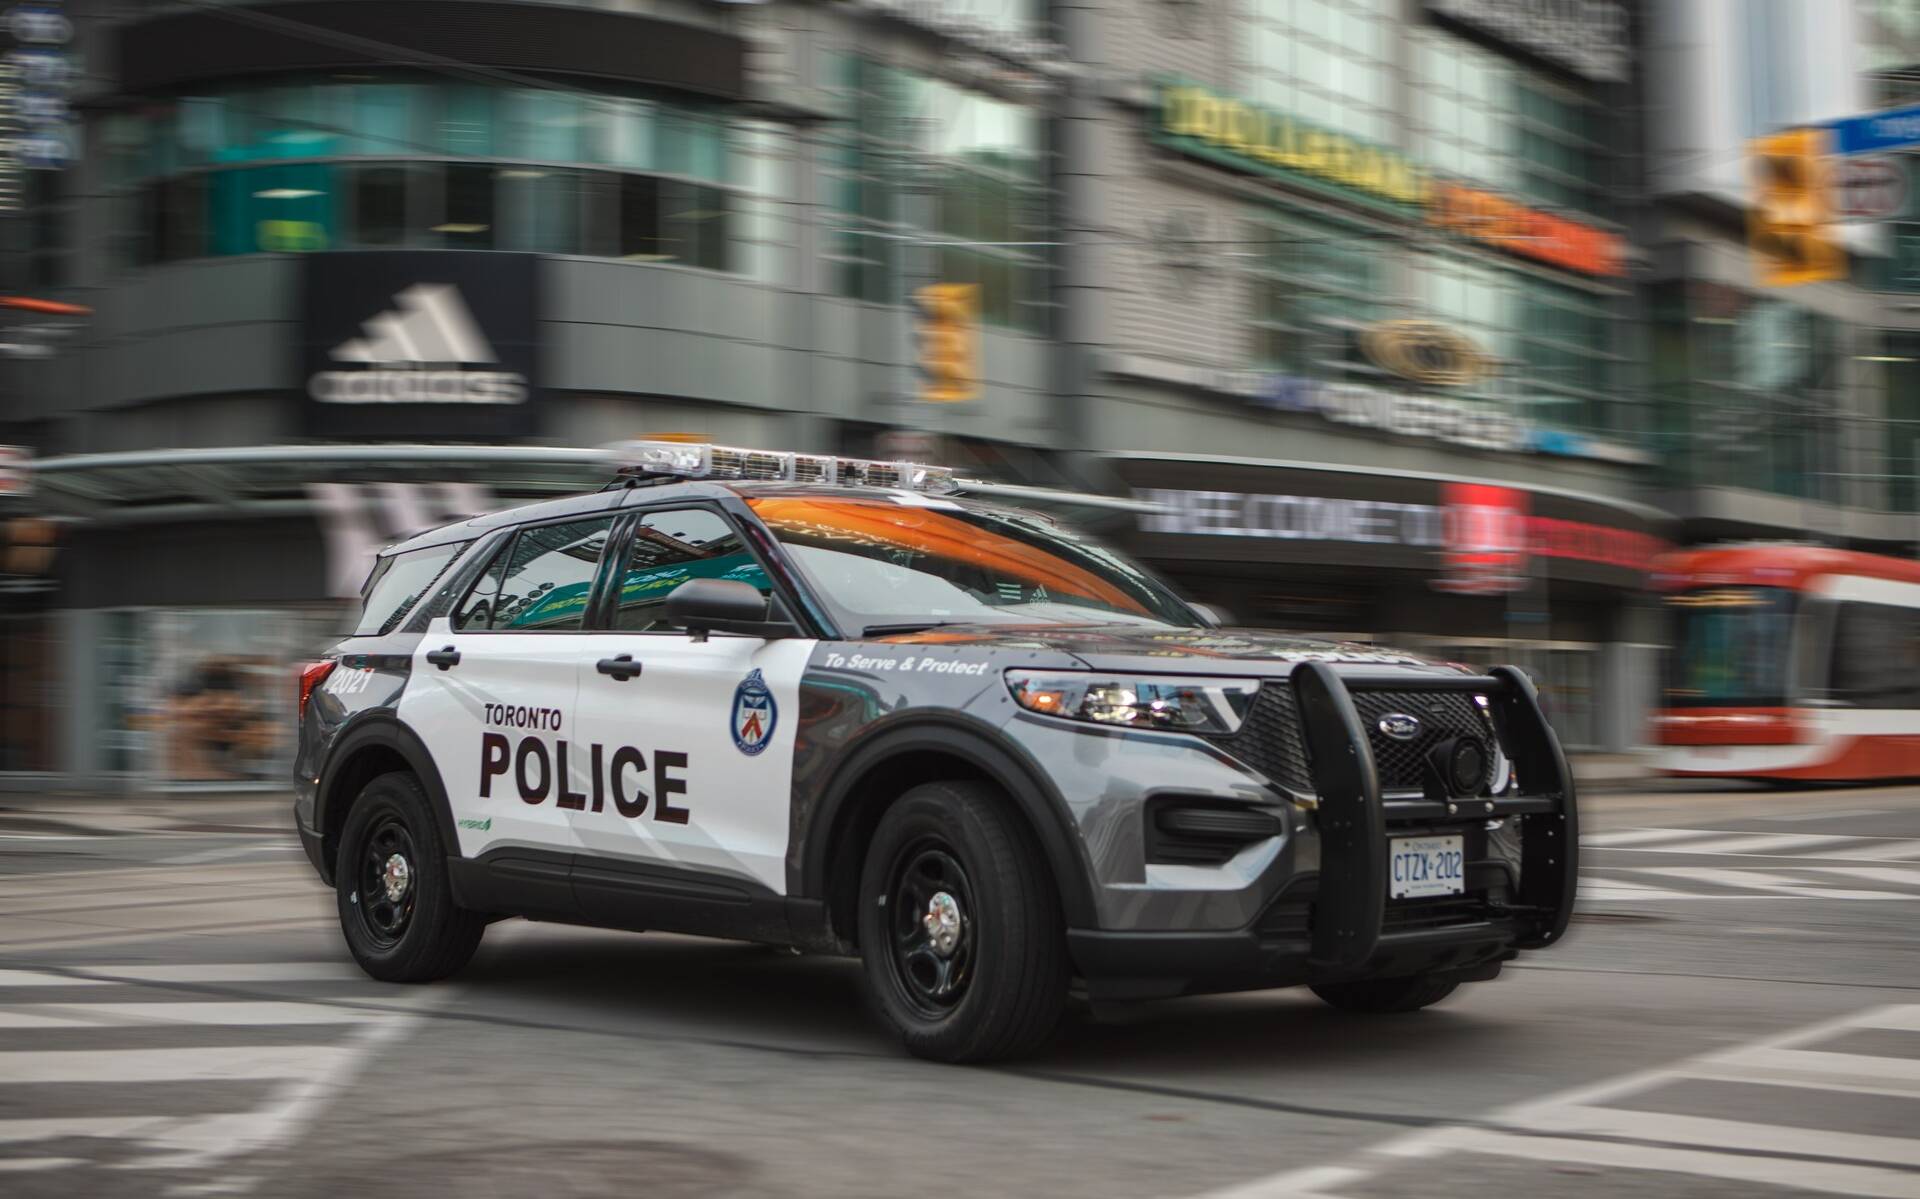 Vol de voiture : la police de Toronto conseille… de ne pas cacher vos clés ? 611824-vol-de-voiture-la-police-de-toronto-conseille-de-ne-pas-cacher-vos-cles